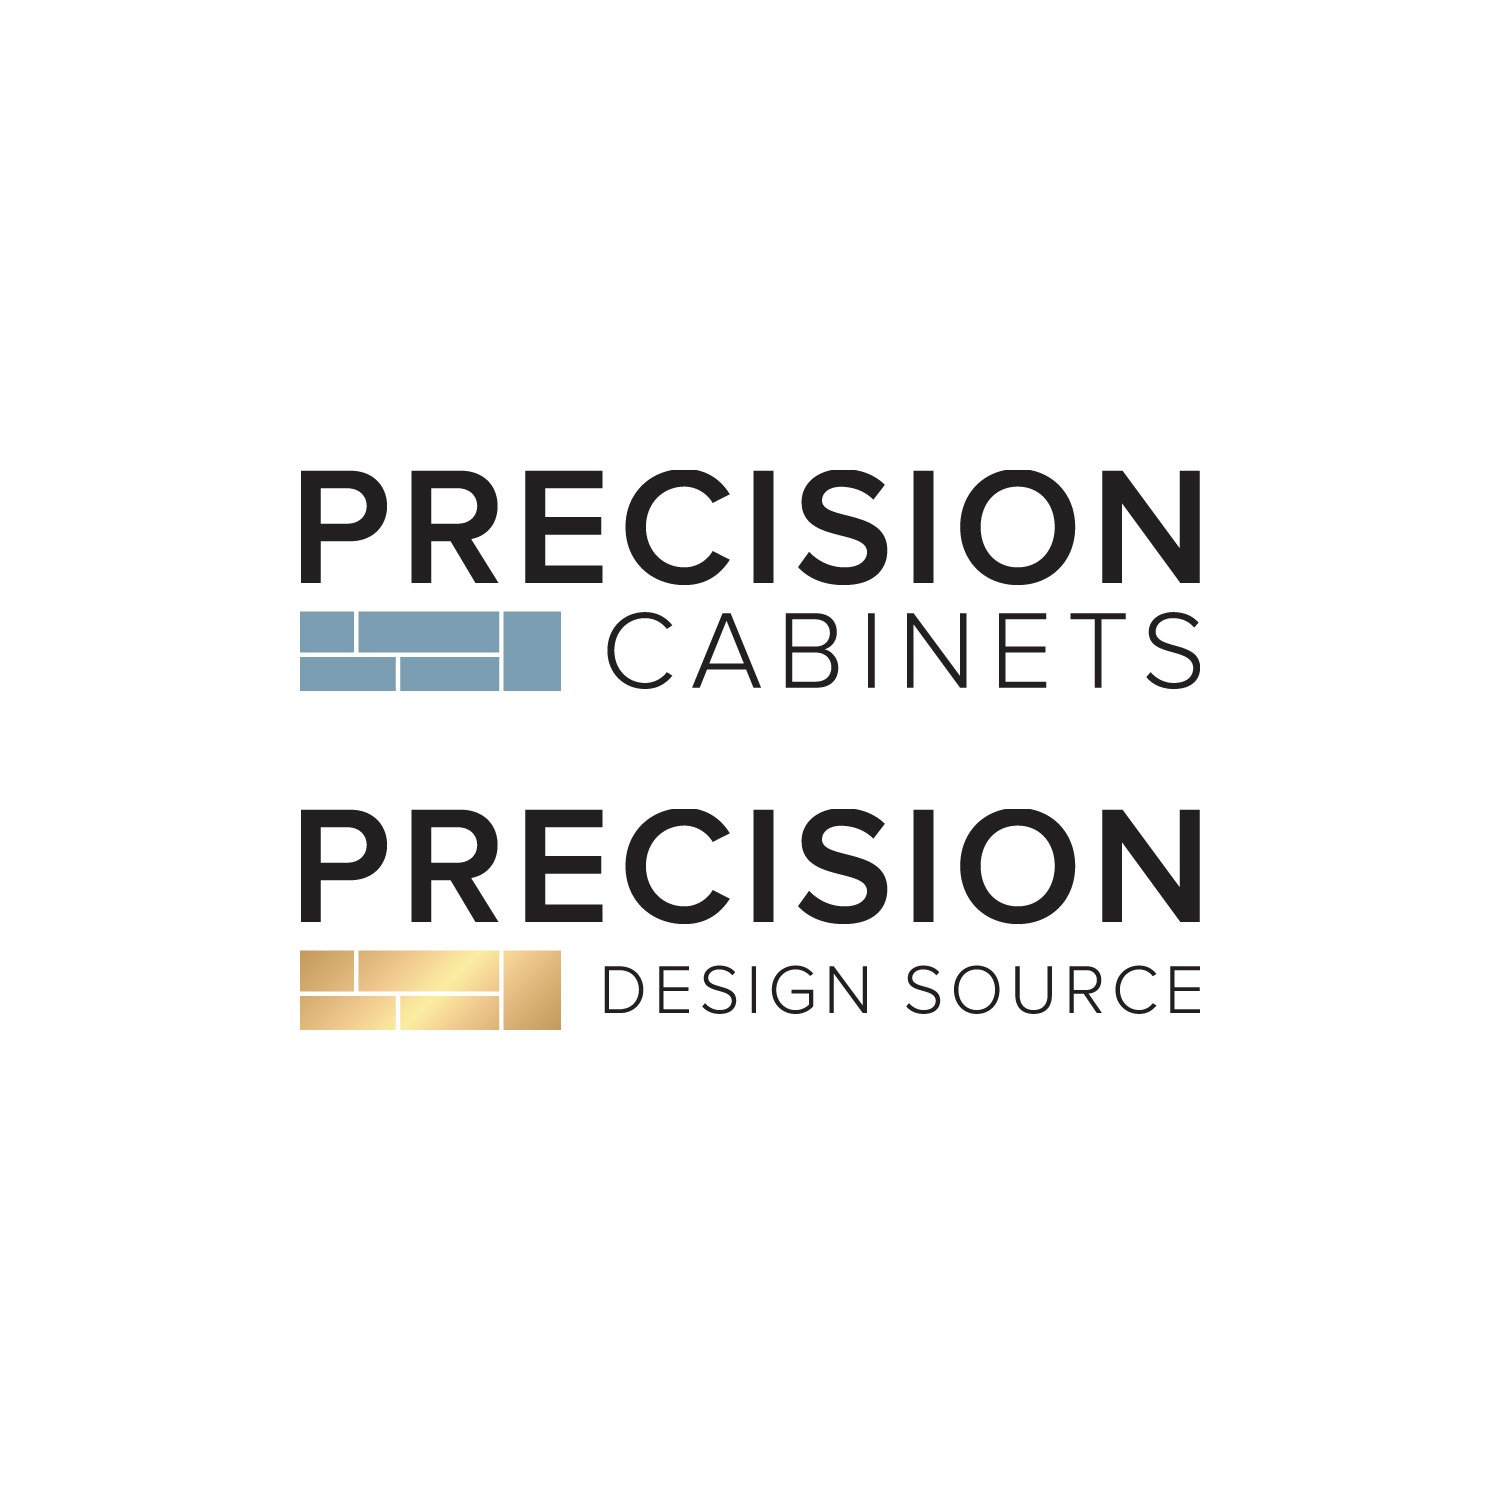 Precision Design Source